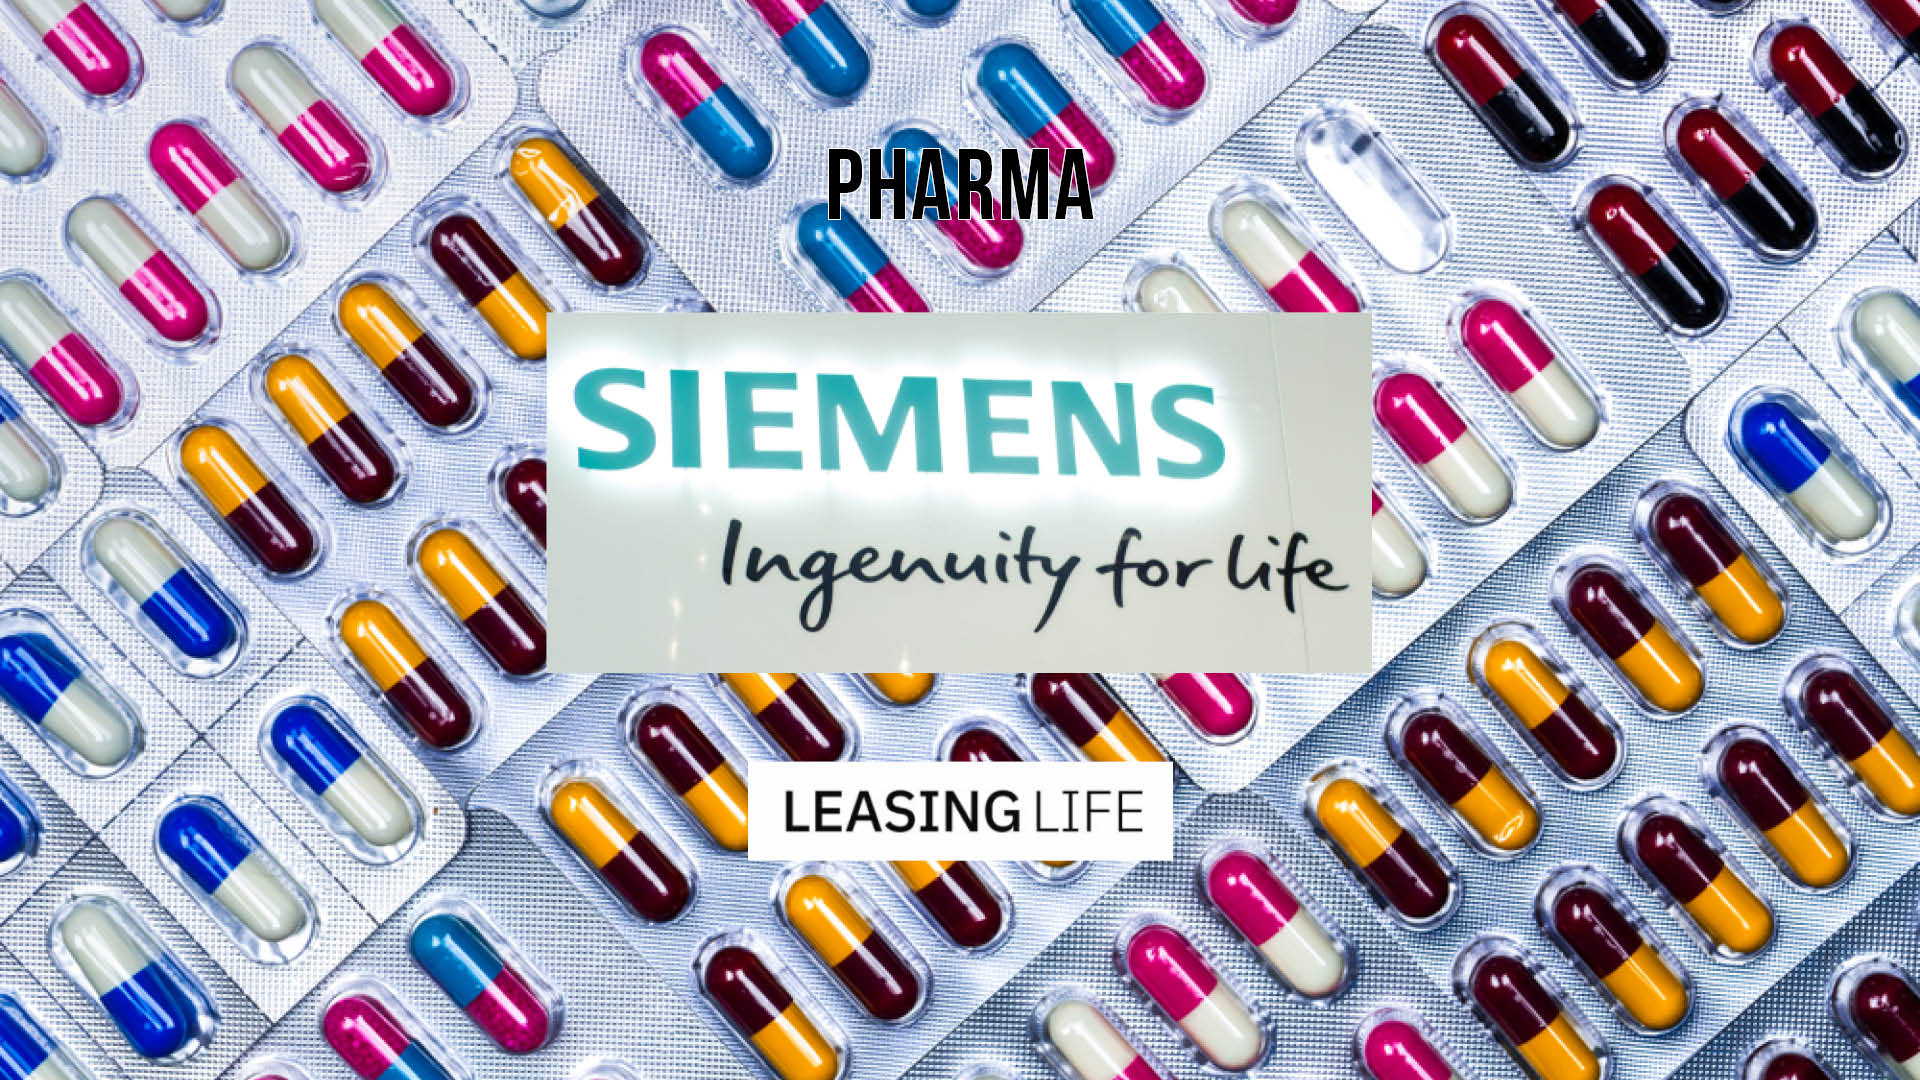 Siemens are funding equipment for Pharmidex